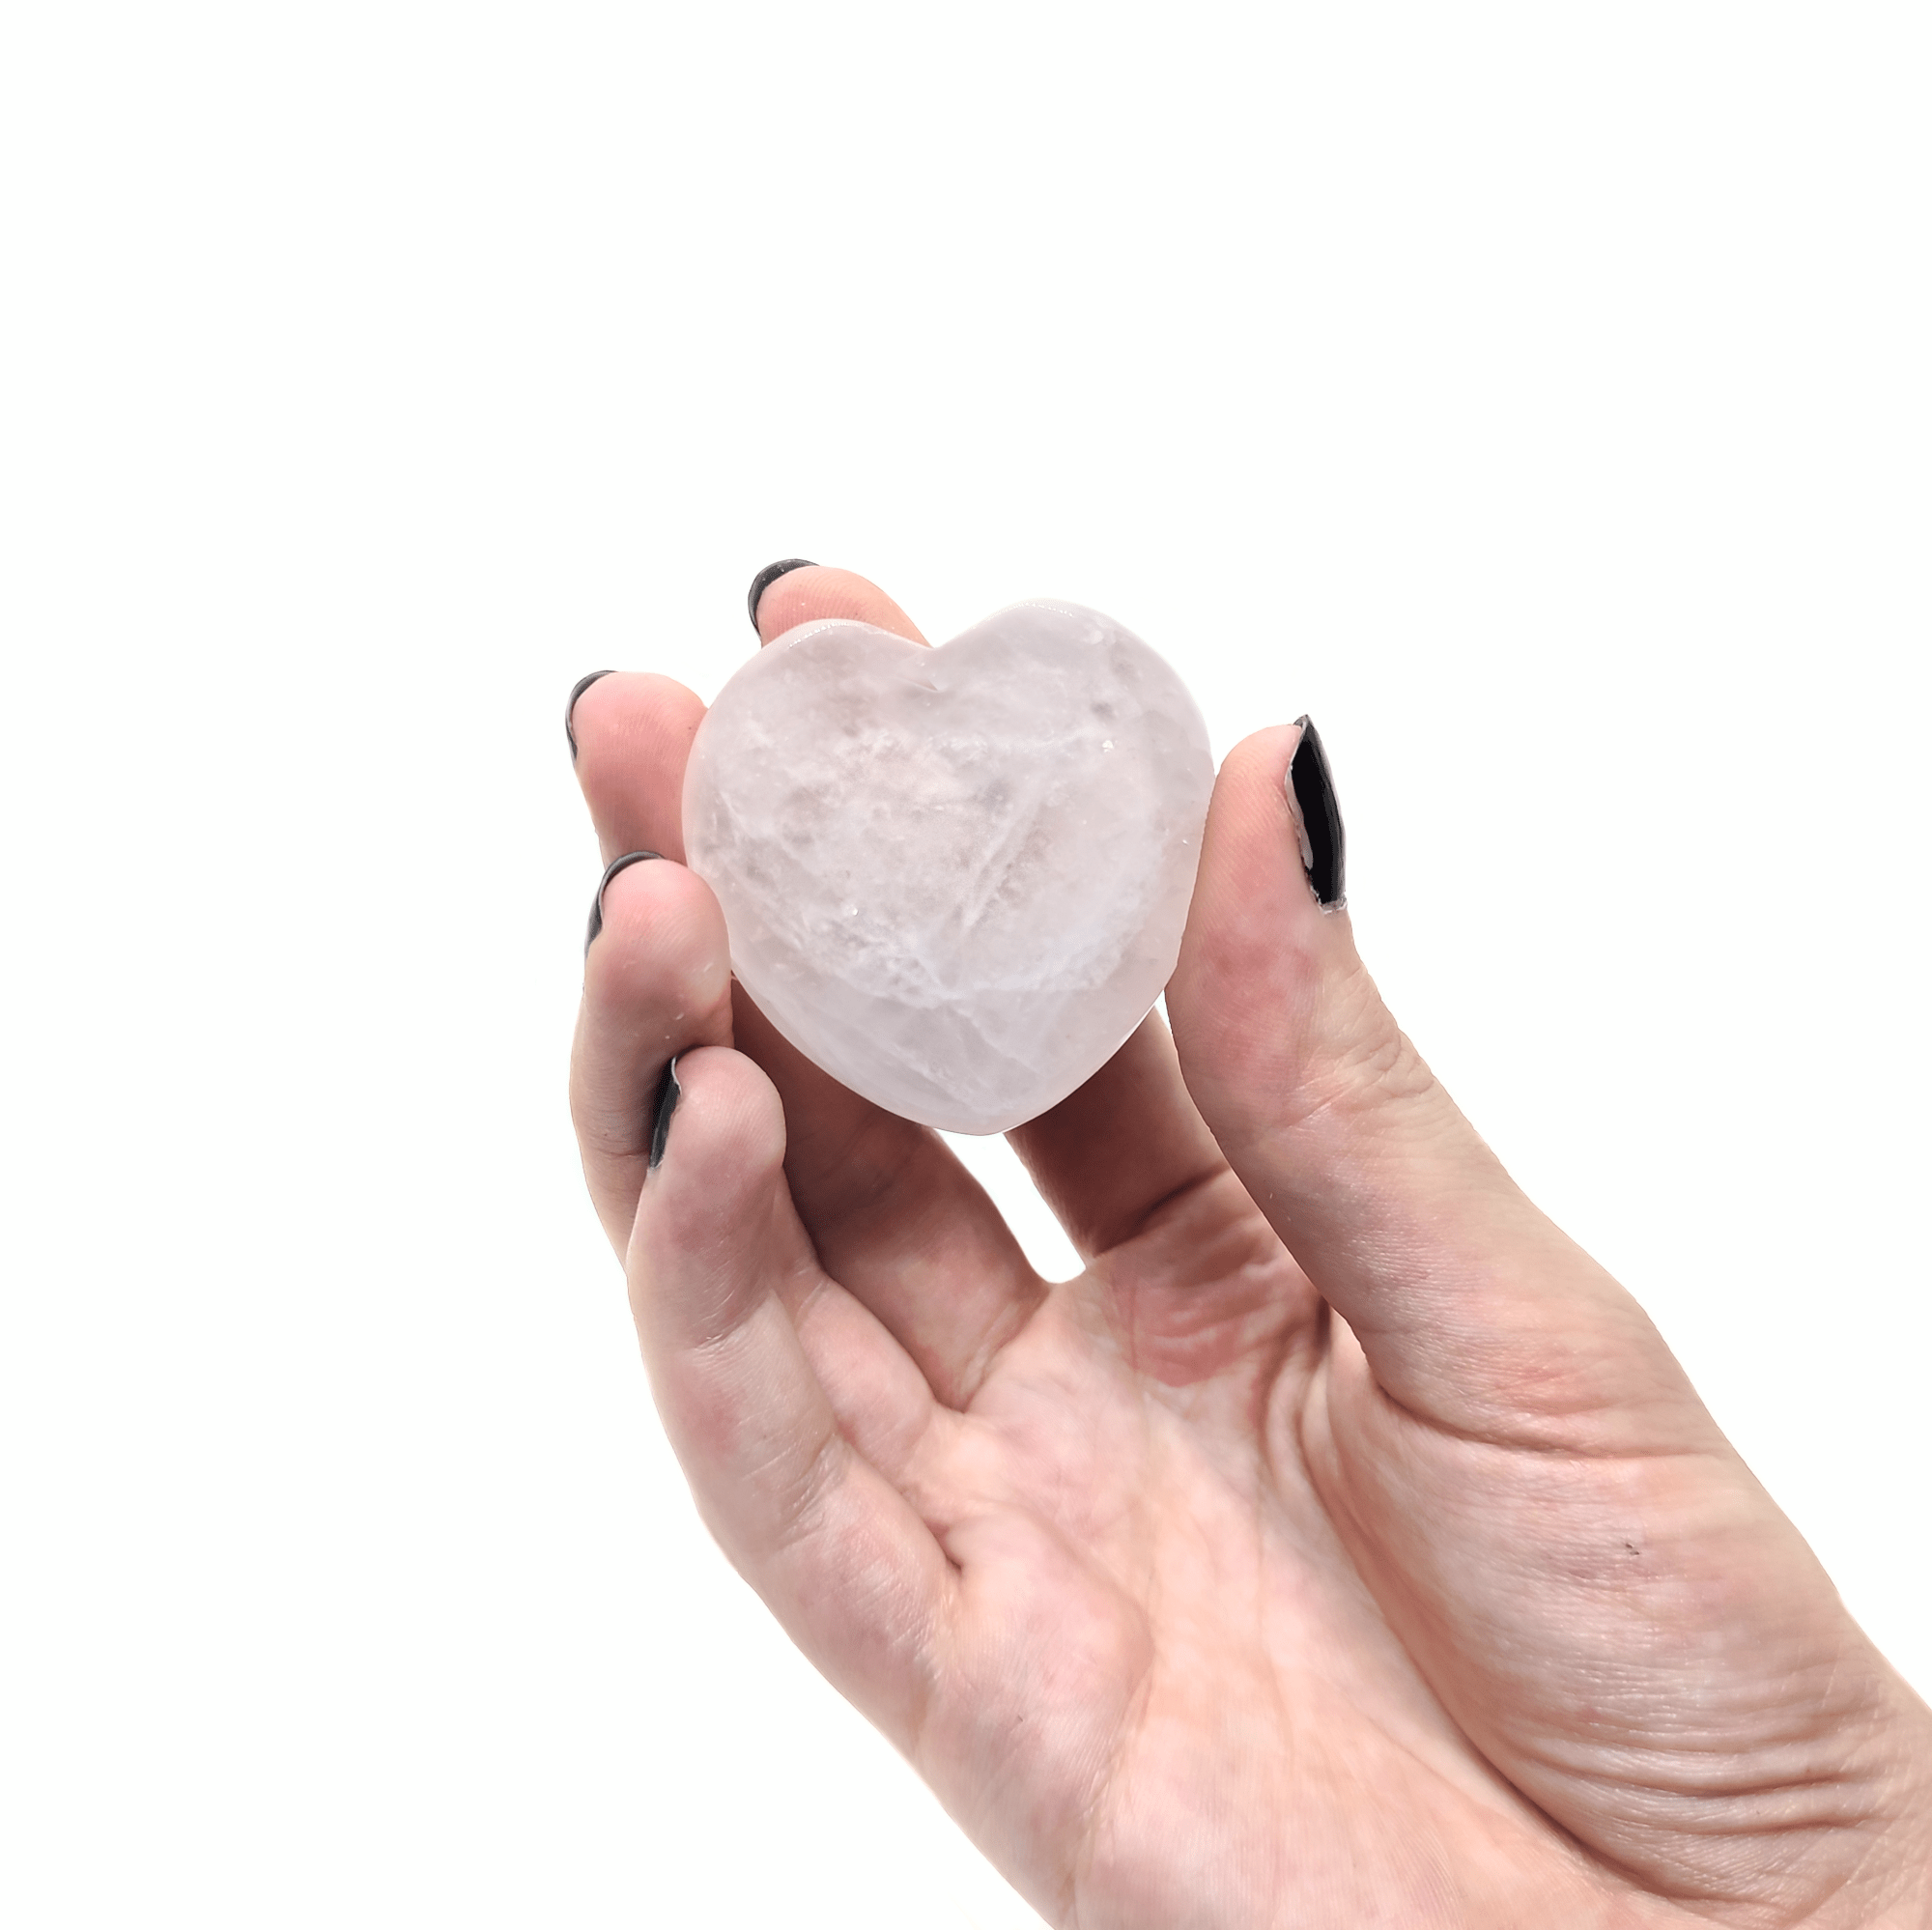 Herzförmiger Rosenquarz welcher von einer Frauenhand gehalten wird.